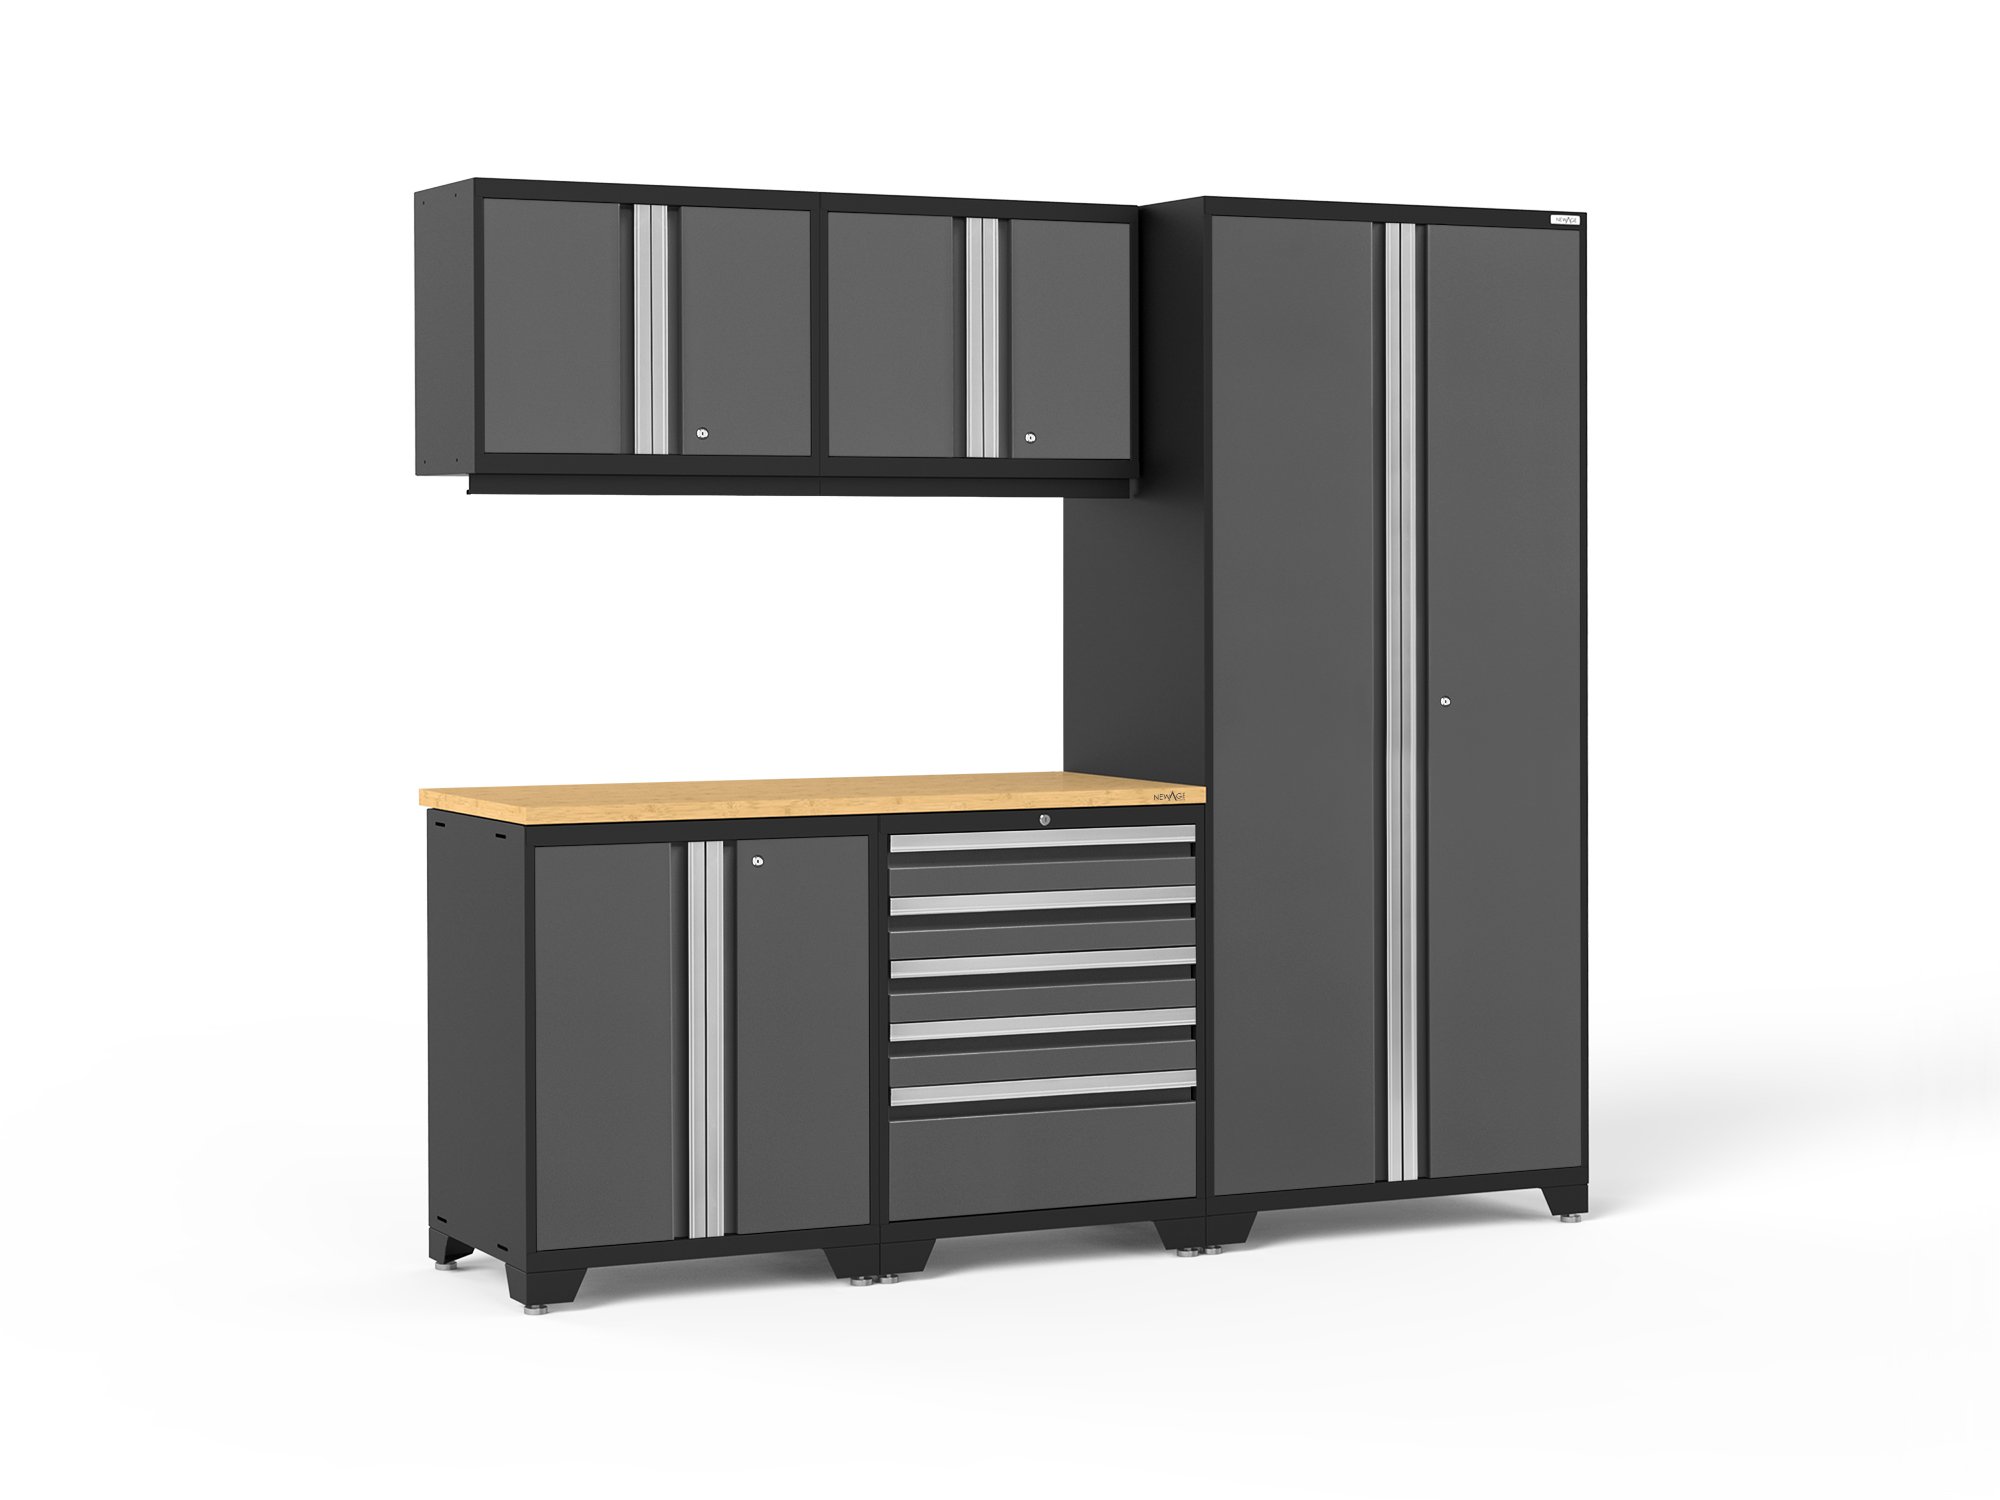 Pro 6 Pc Cabinet Set: Tool, Wall Cabinet, 36 in. Locker